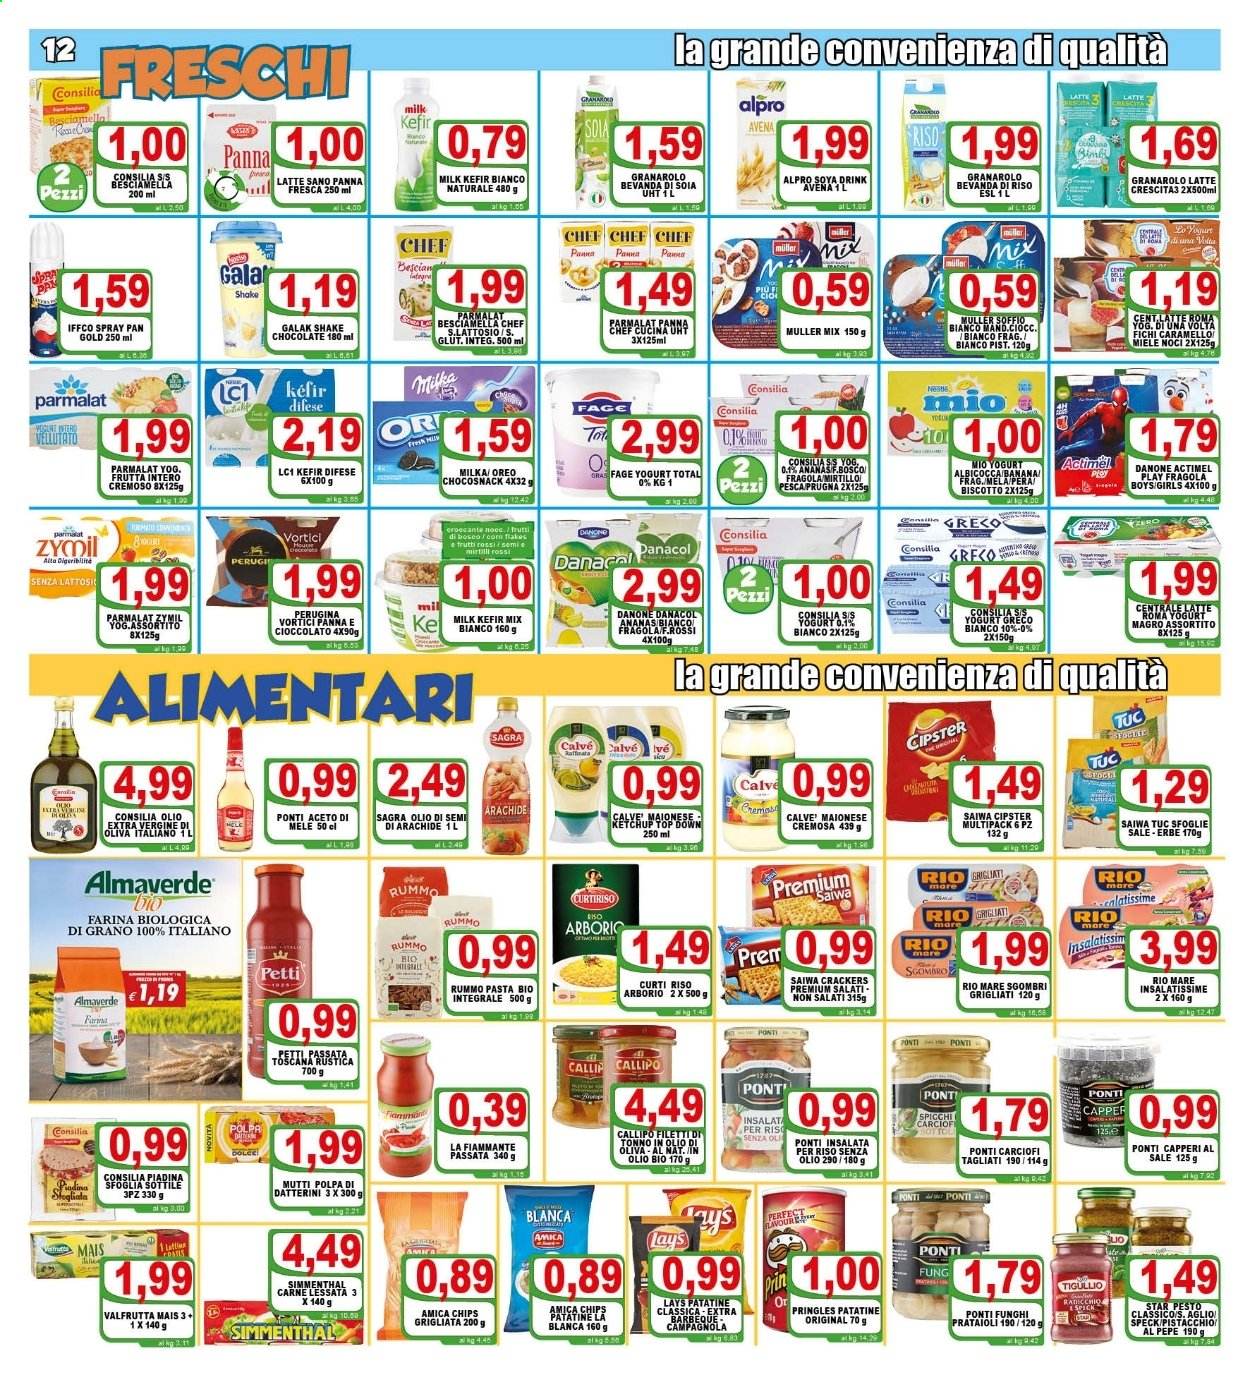 Volantino Top Supermercati - 28.4.2021 - 6.5.2021.